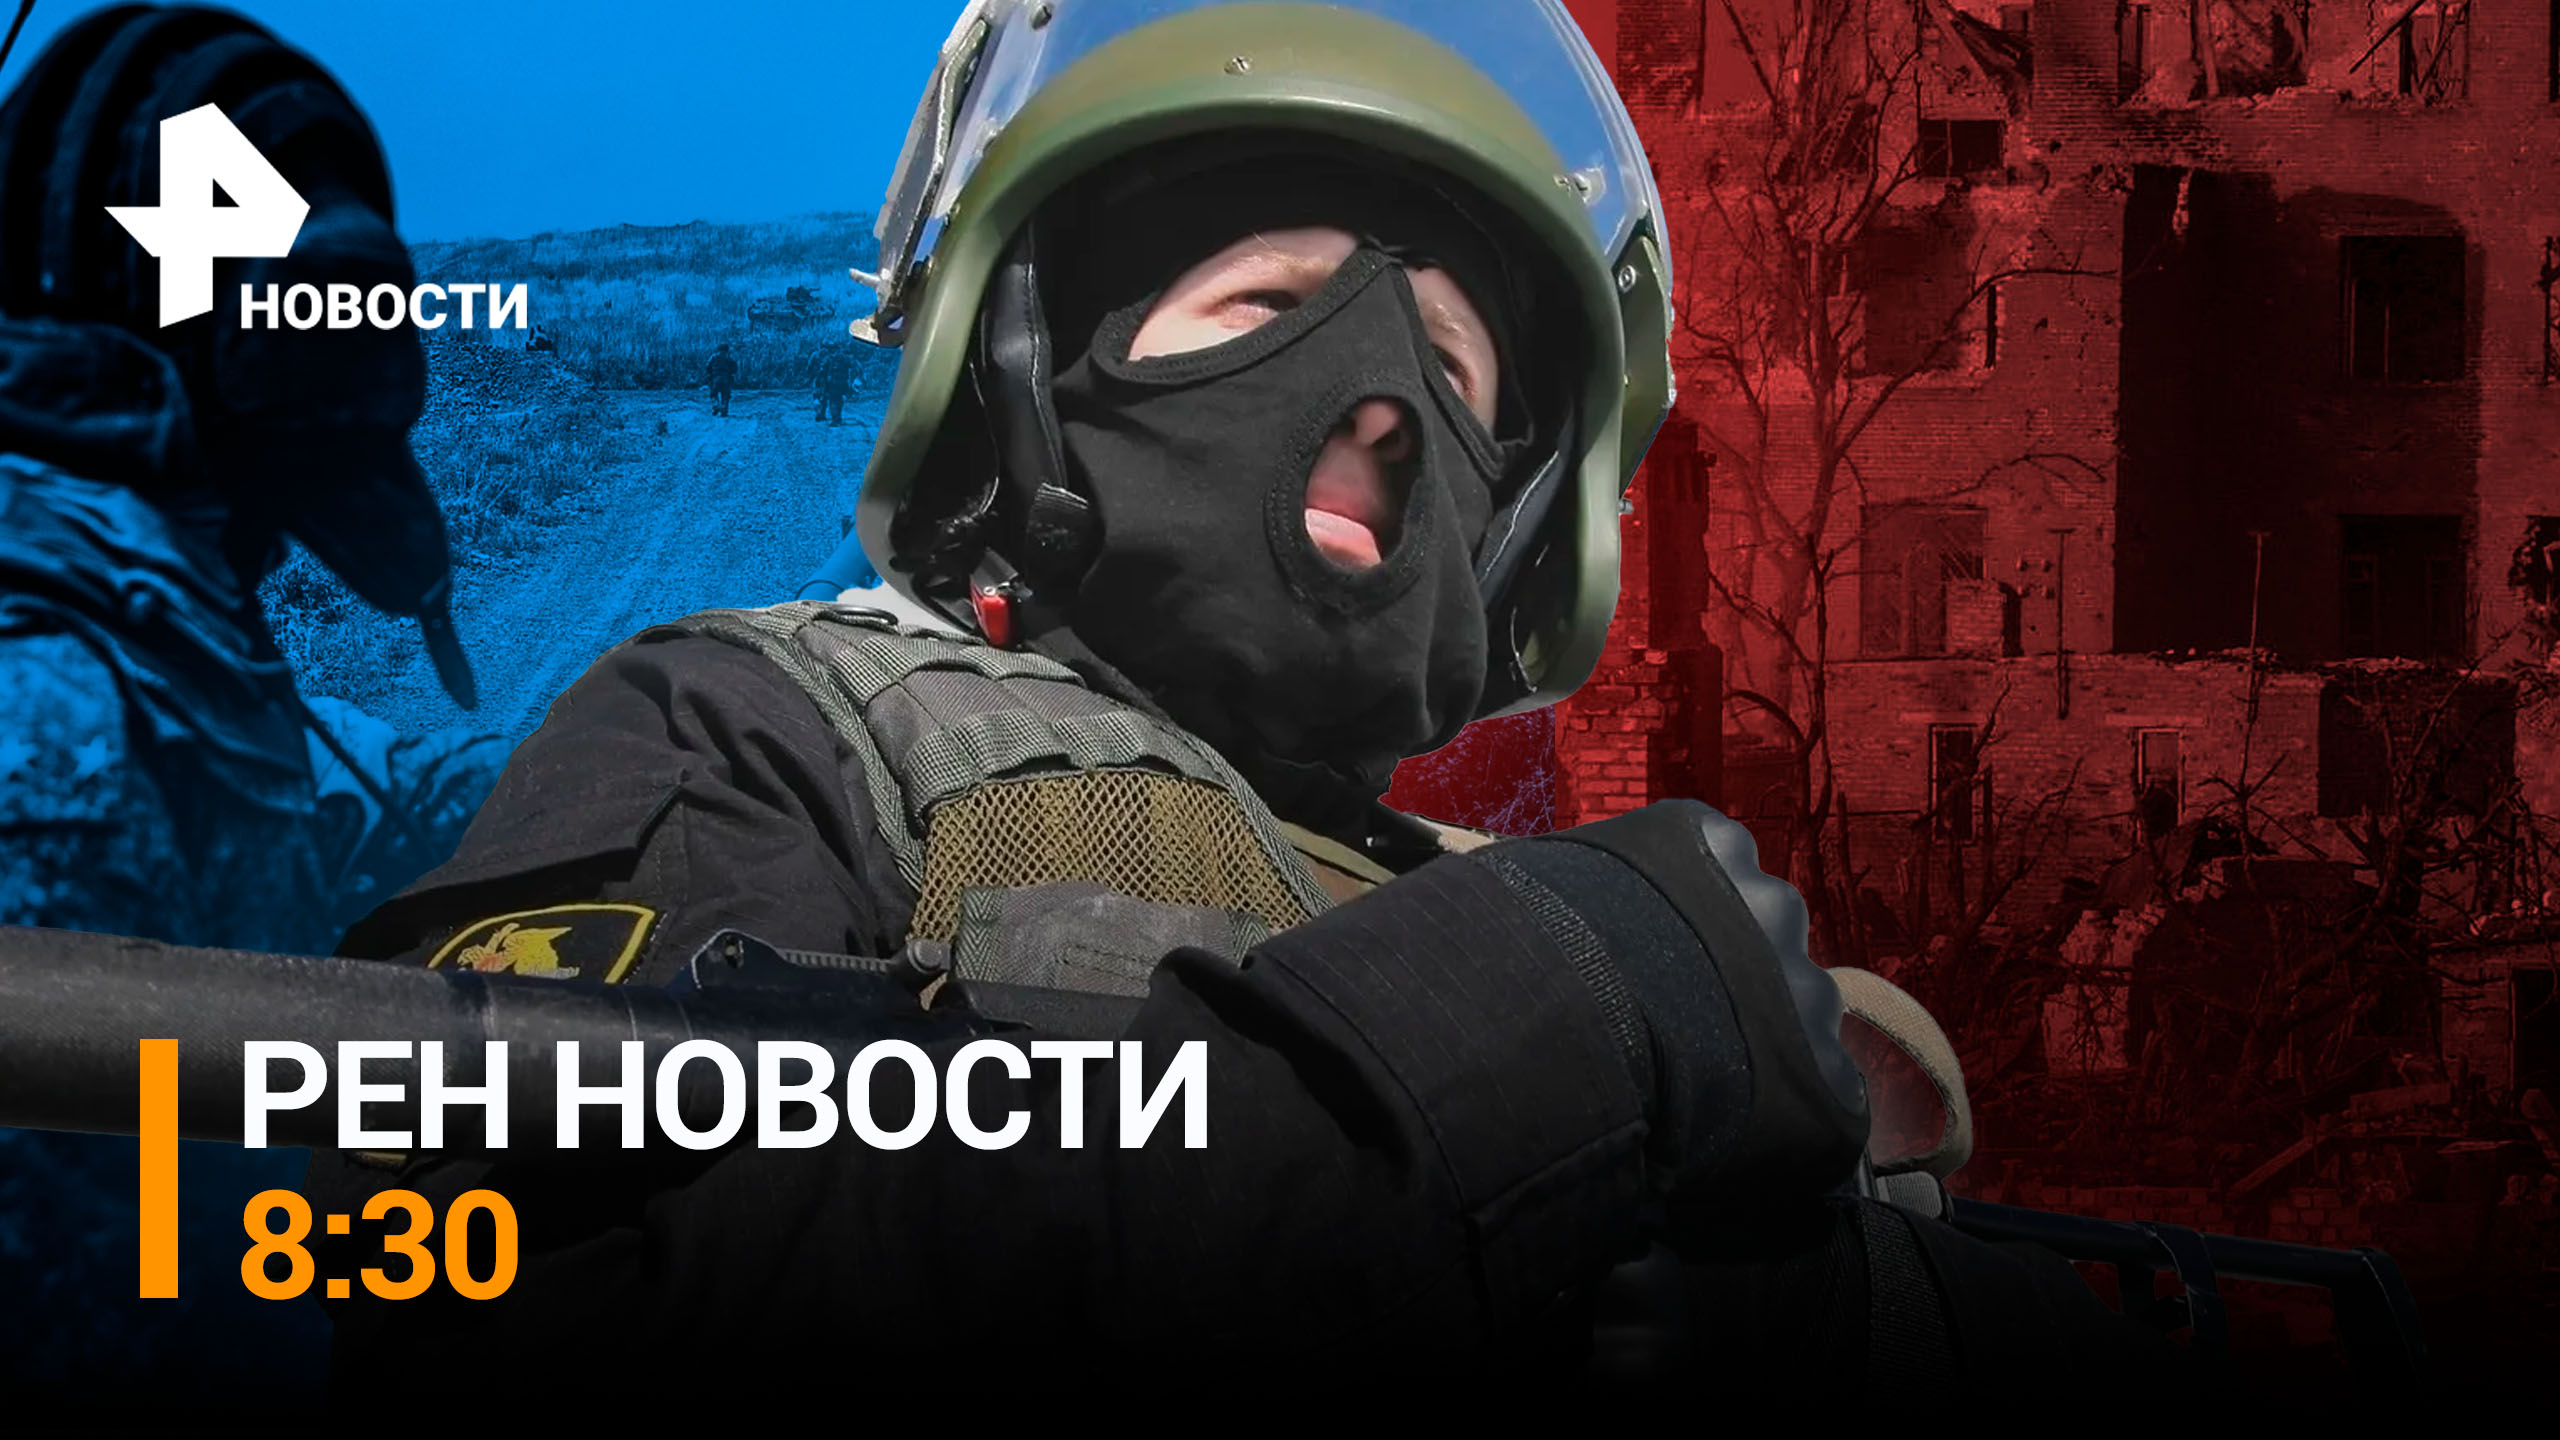 Что происходит в Белгородской области после введения режима КТО / РЕН НОВОСТИ 8:30 от 23.05.23